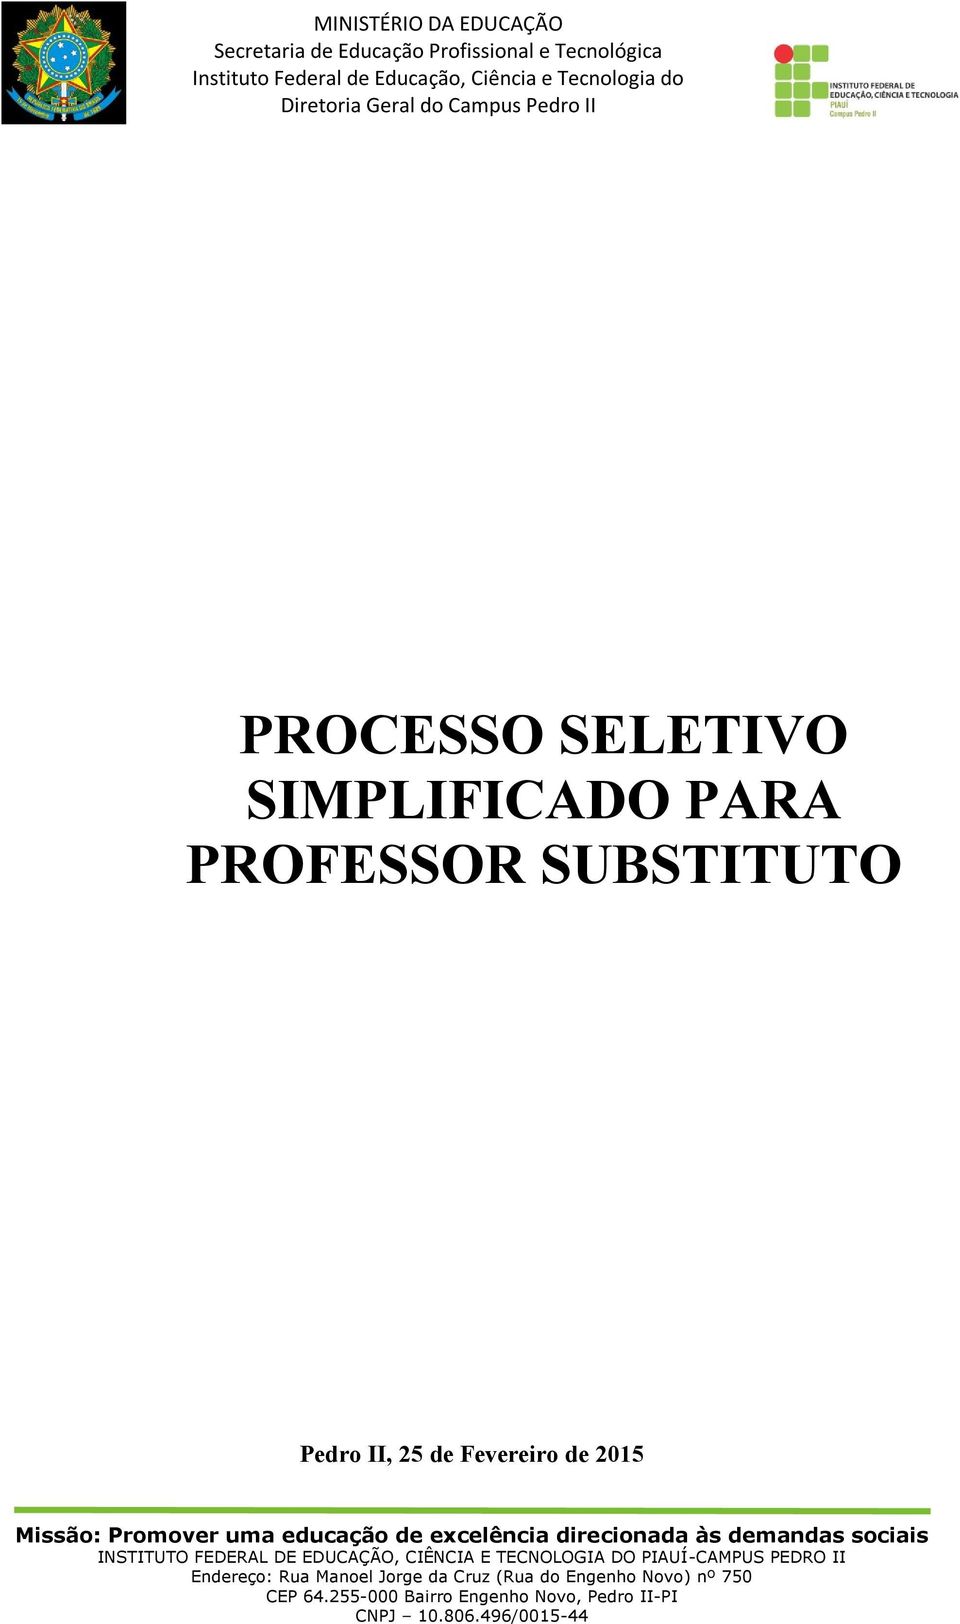 PROFESSOR SUBSTITUTO